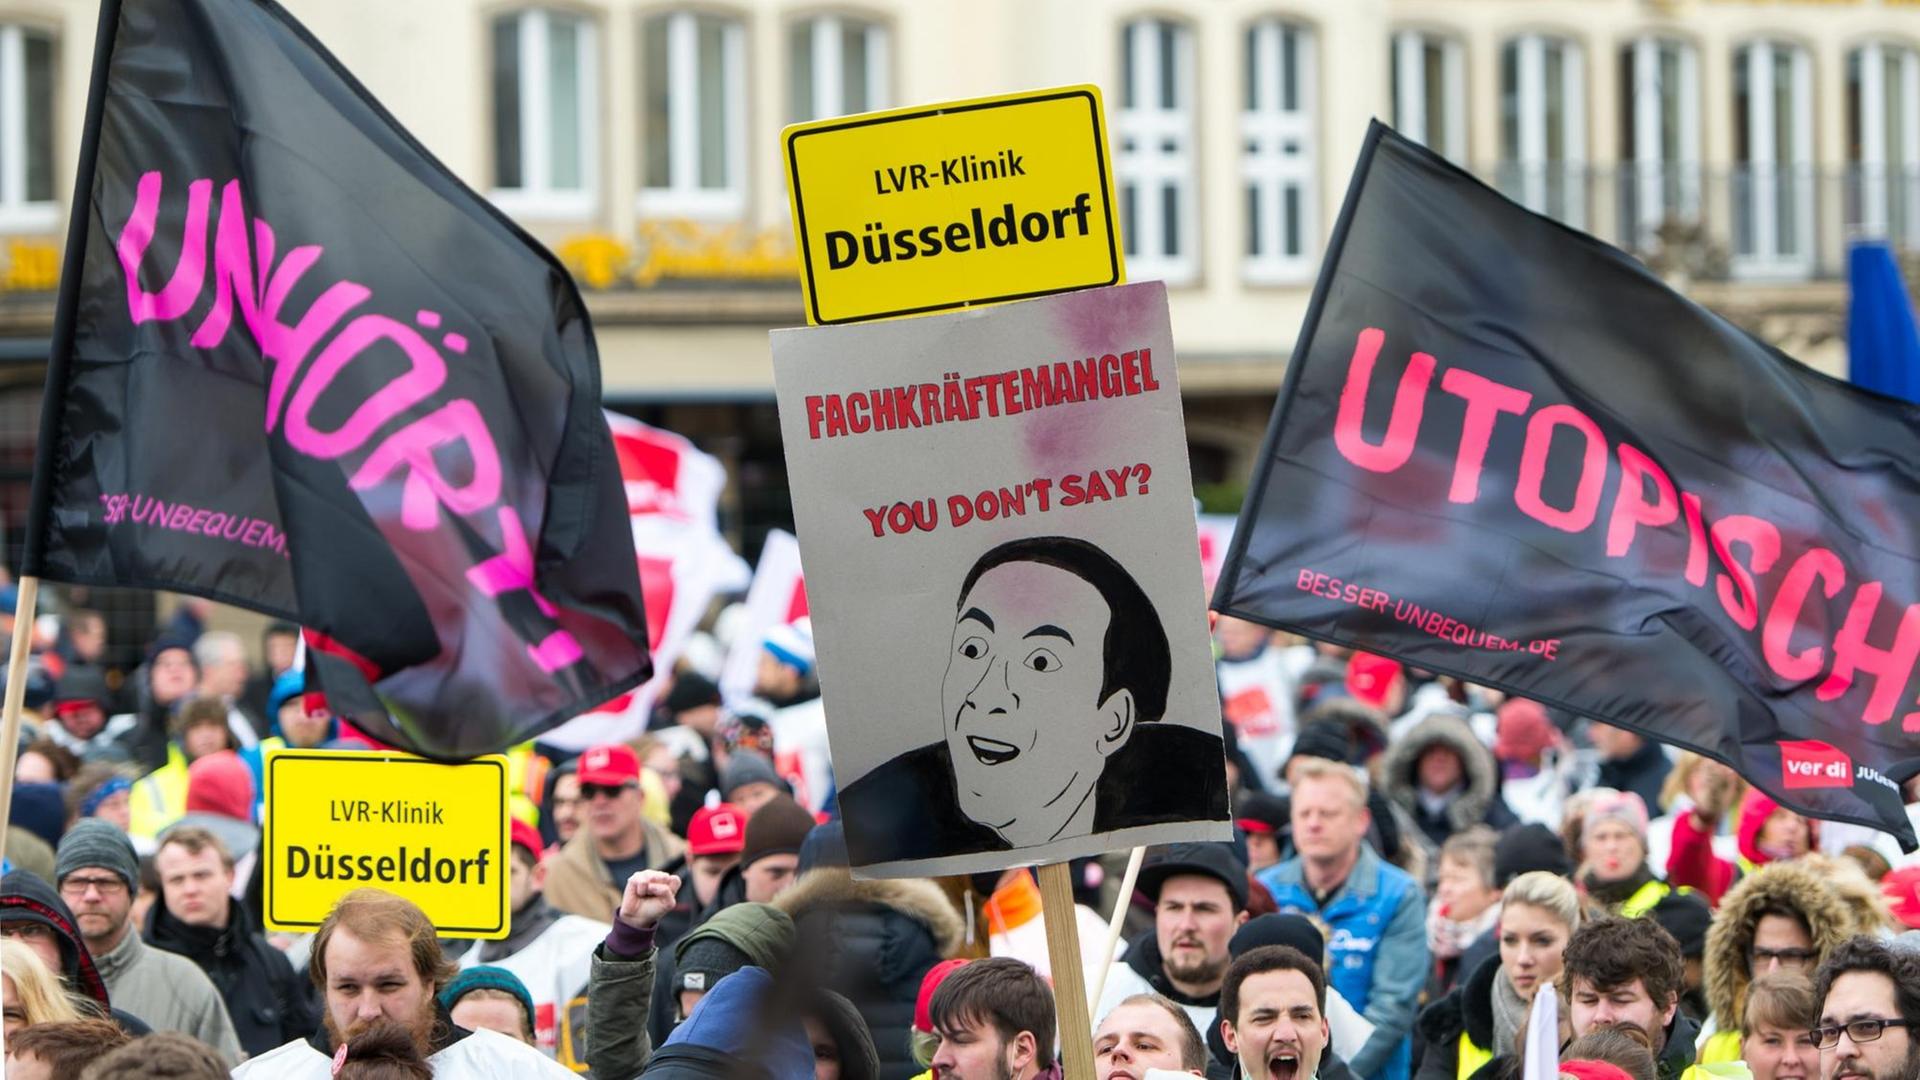 Streikende demonstrieren in Düsseldorf.